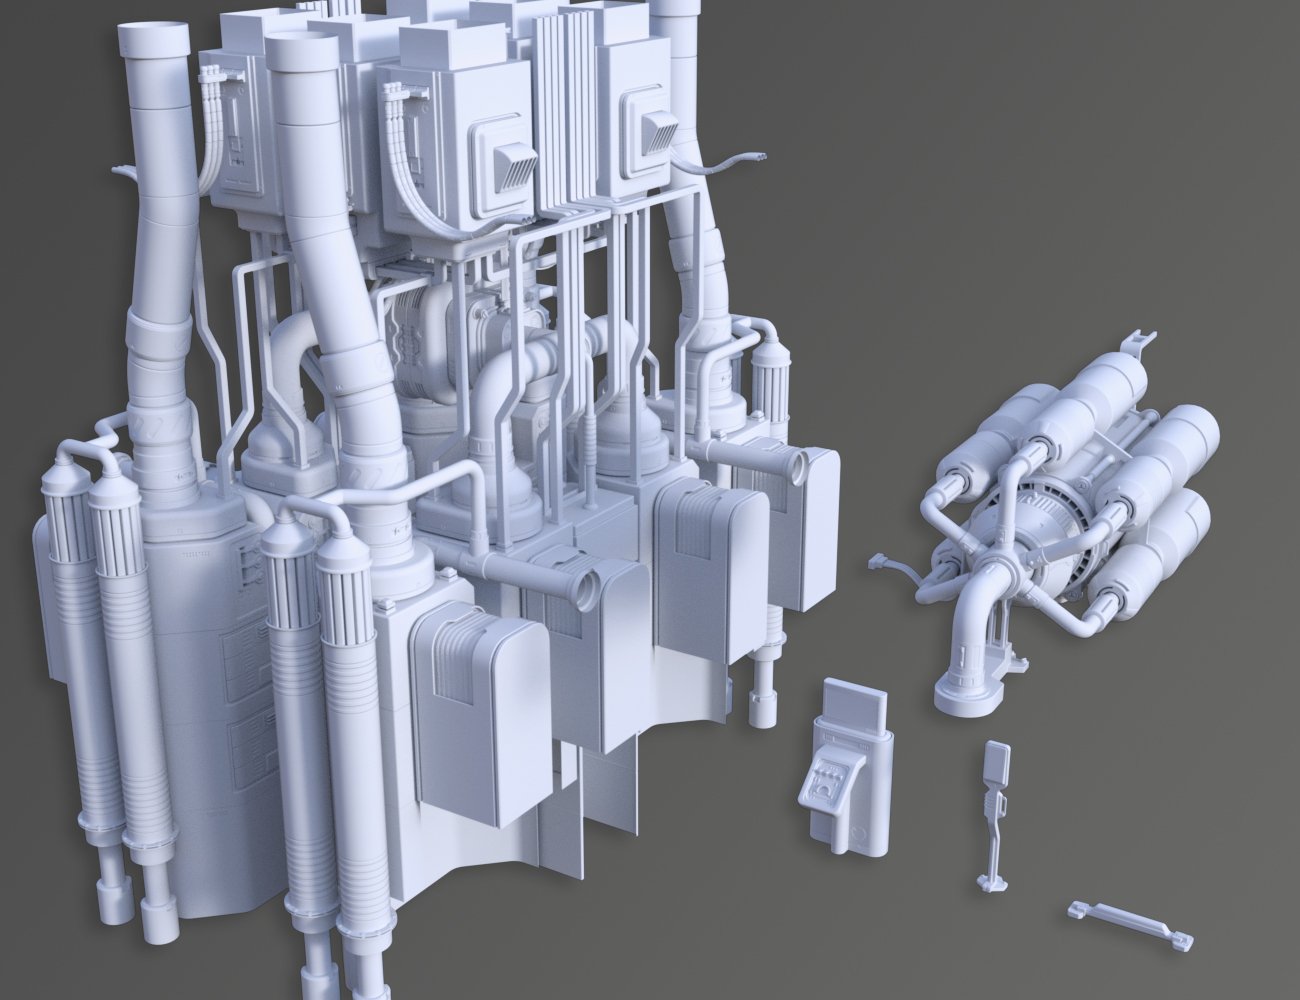 Sci-Fi Artifact 3 by: petipet, 3D Models by Daz 3D